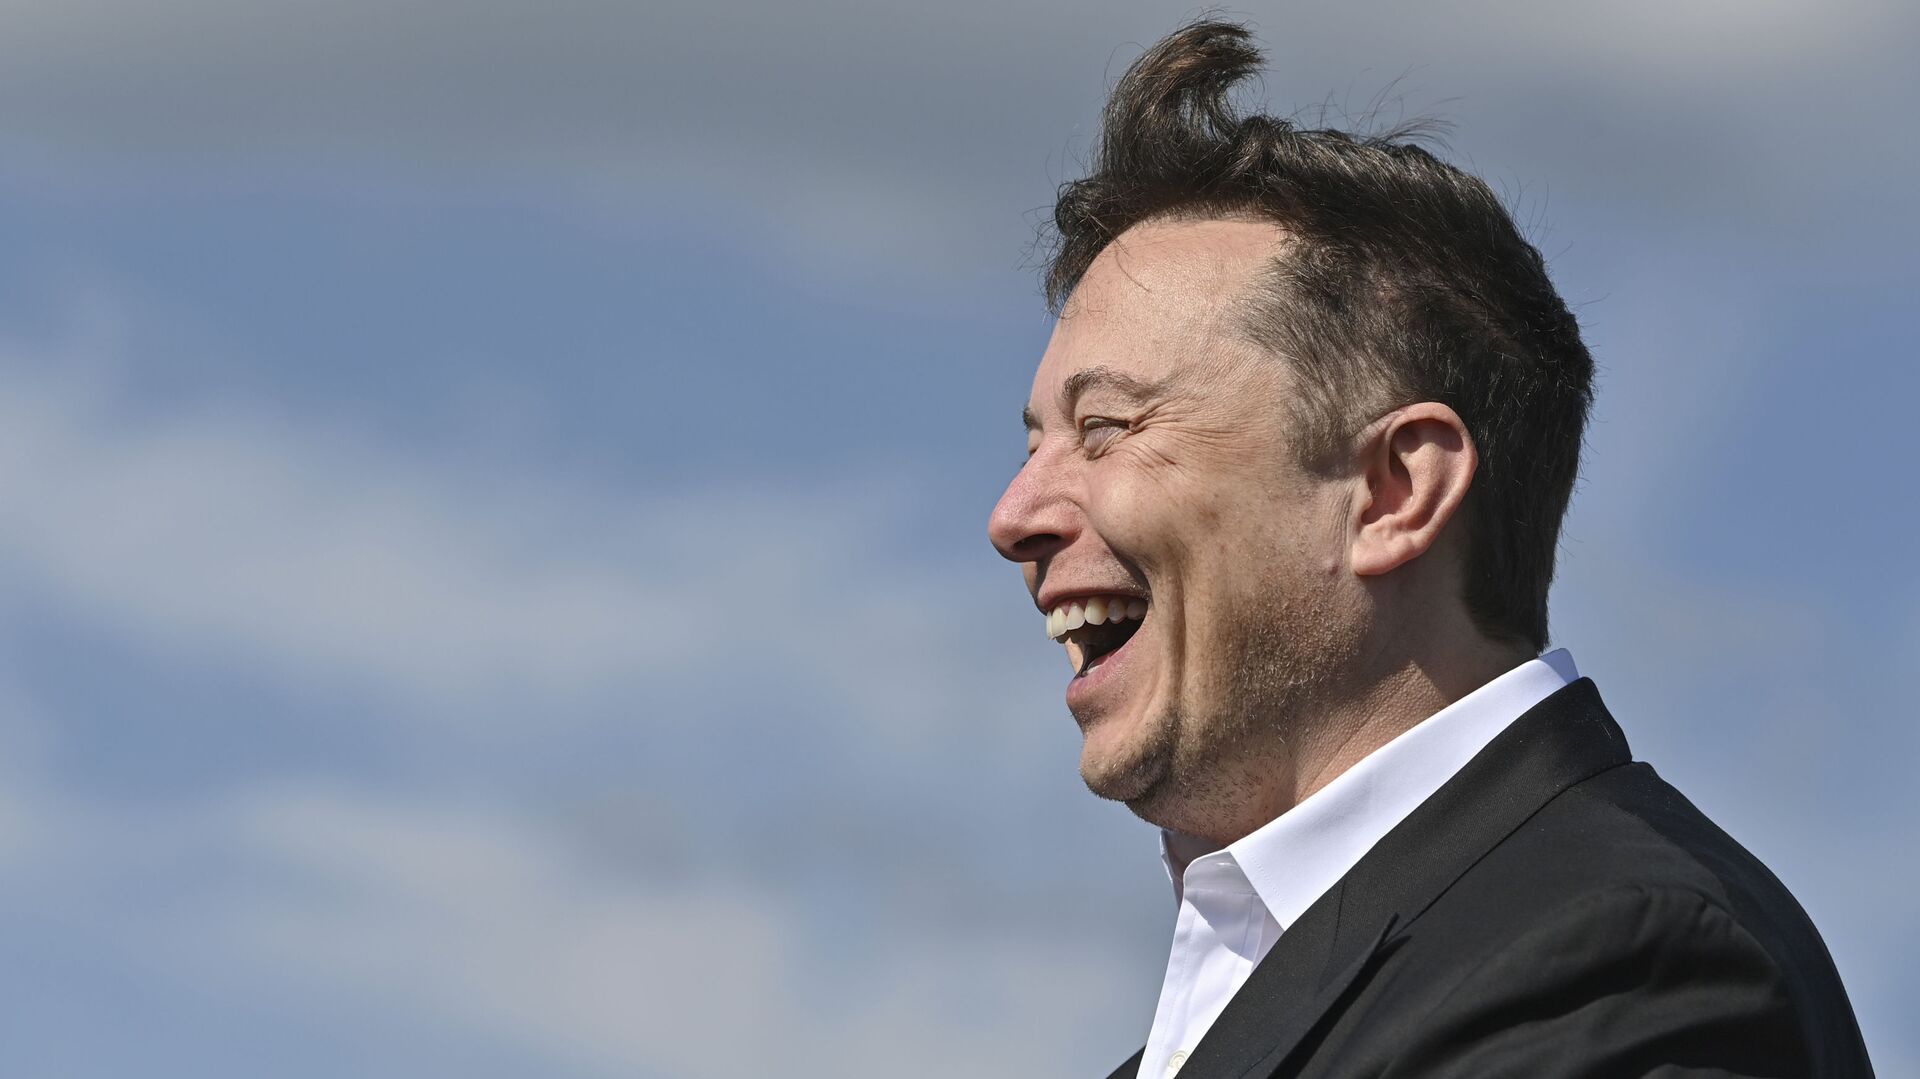 Doanh nhân công nghệ Elon Musk cười khi đến thăm công trường xây dựng Tesla Gigafactory ở Gruenheide gần Berlin, Đức, ngày 3 tháng 9 năm 2020. - Sputnik Việt Nam, 1920, 09.05.2022